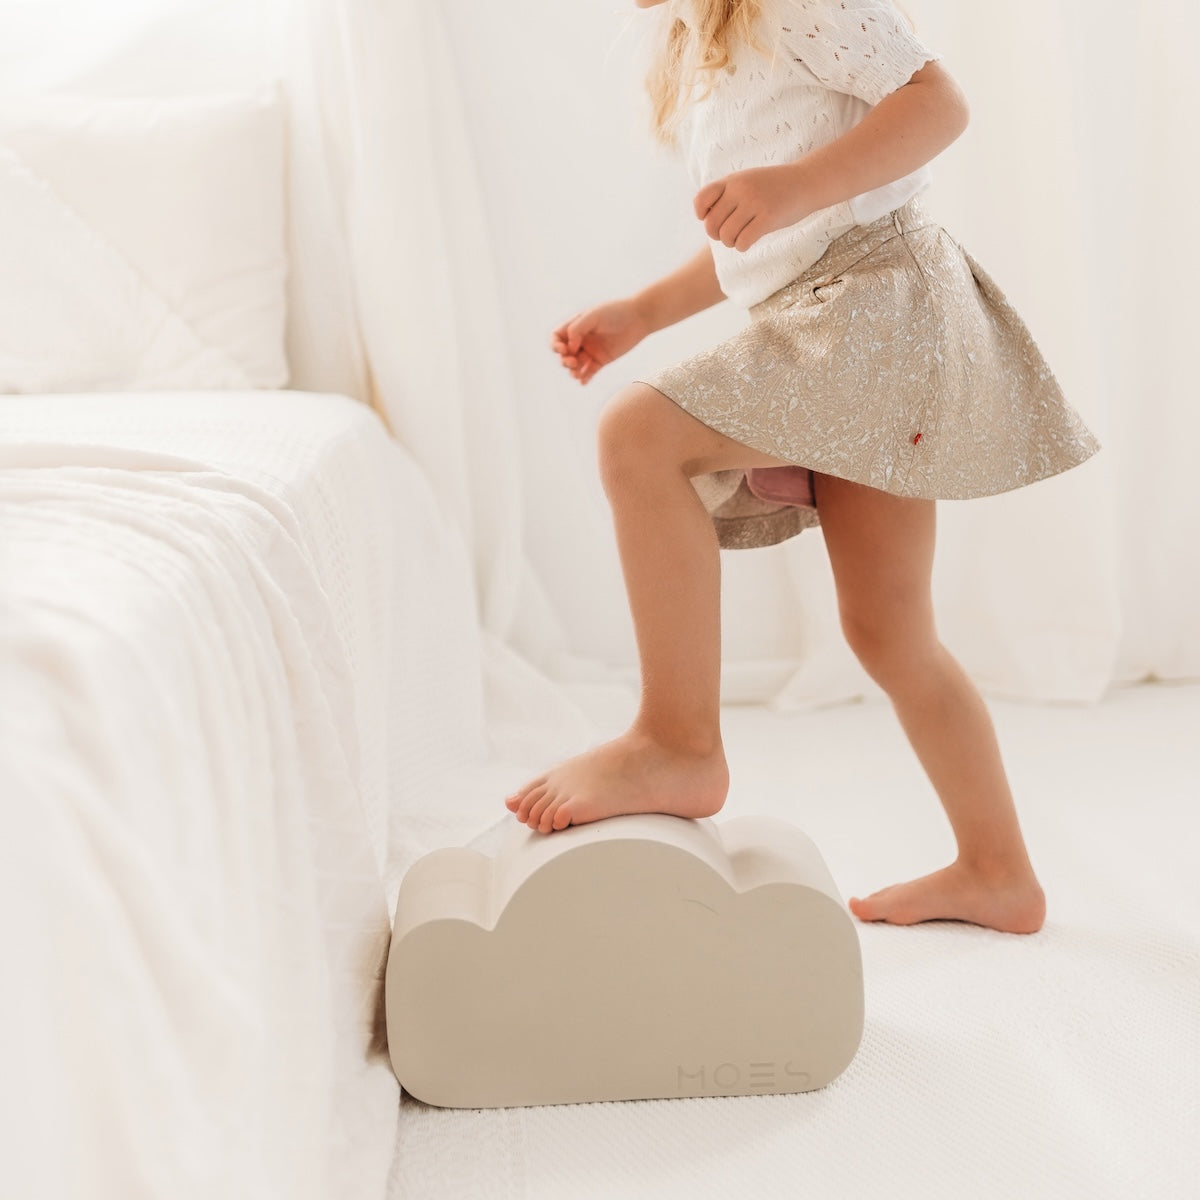 Deze Moes Play Cloud is ideaal voor als je je kindje kennis wilt laten maken met open ended speelgoed; speelgoed waarbij alles mogelijk is! Je kunt op de wolk gaan liggen, er overheen lopen, het gebruiken als cool parcouronderdeel of het wolkje gebruiken als decor van je verhaal! VanZus